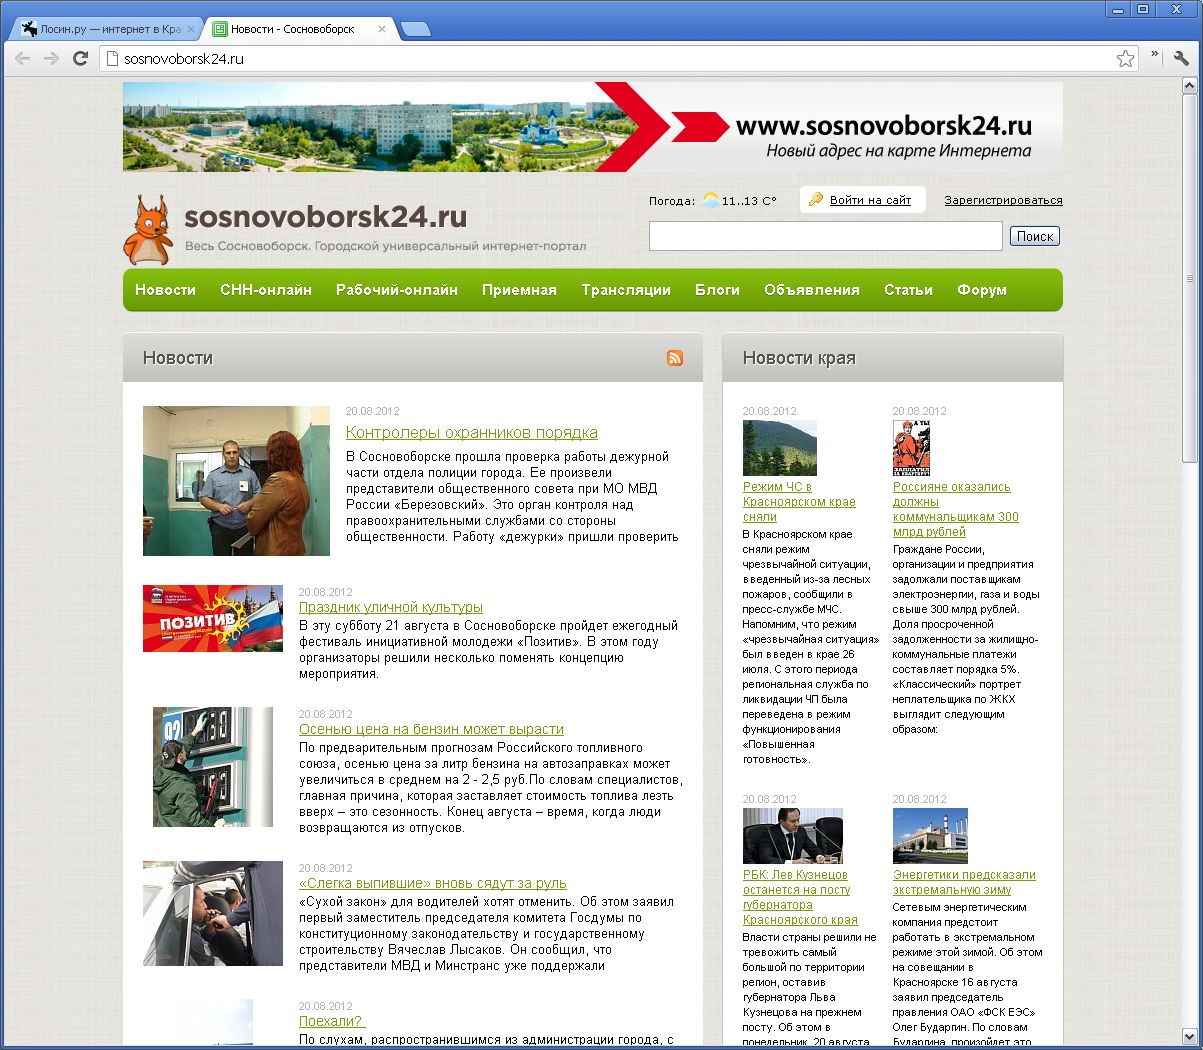 Сайт сосновоборского суда красноярского